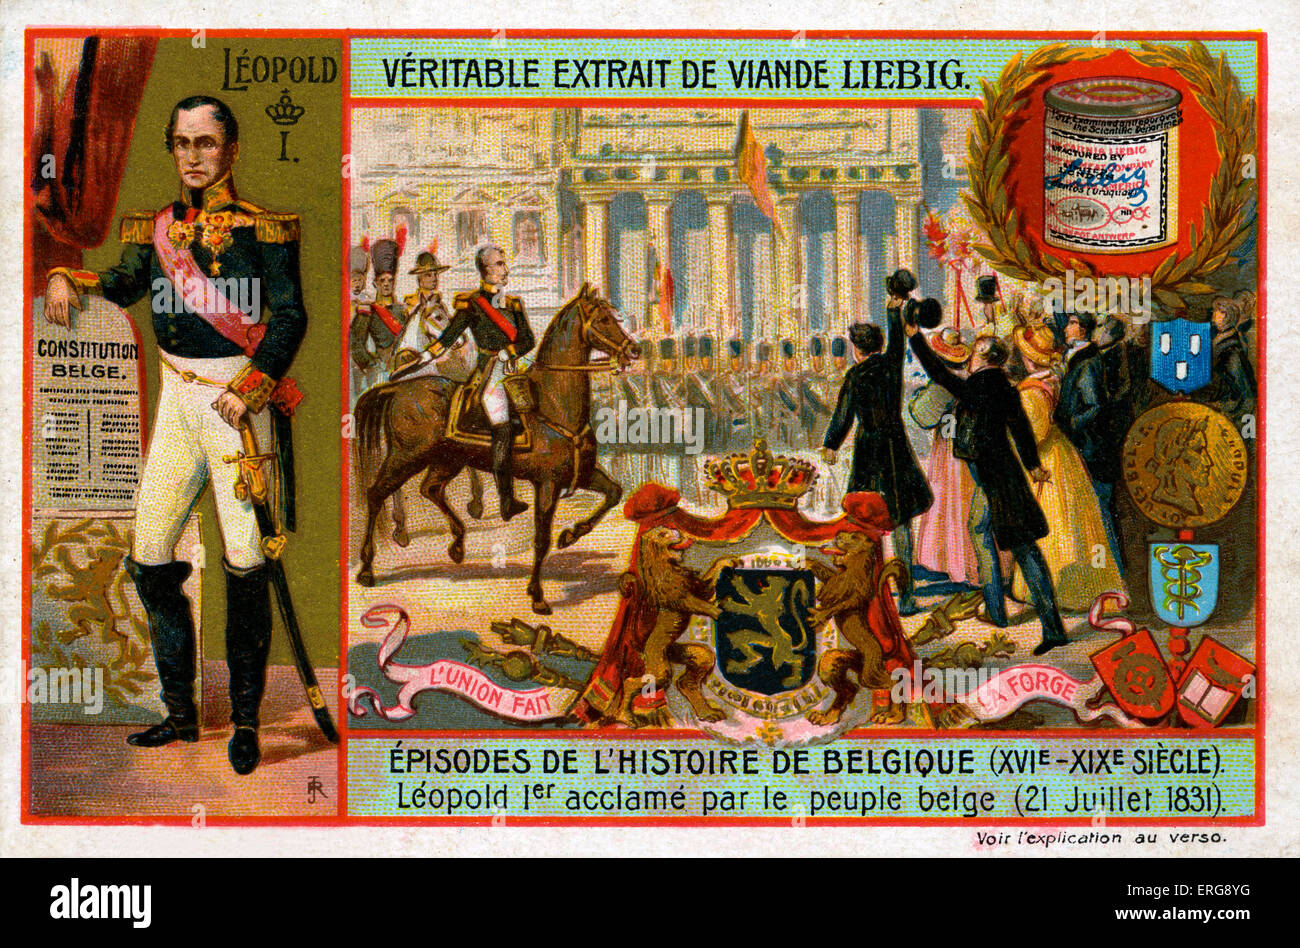 Leopold begrüßte ich (1790-1864), dem ersten König von Belgien, von den Menschen in Belgien auf seinem Beitritt zum Thron 21. Juli 1831. Stockfoto